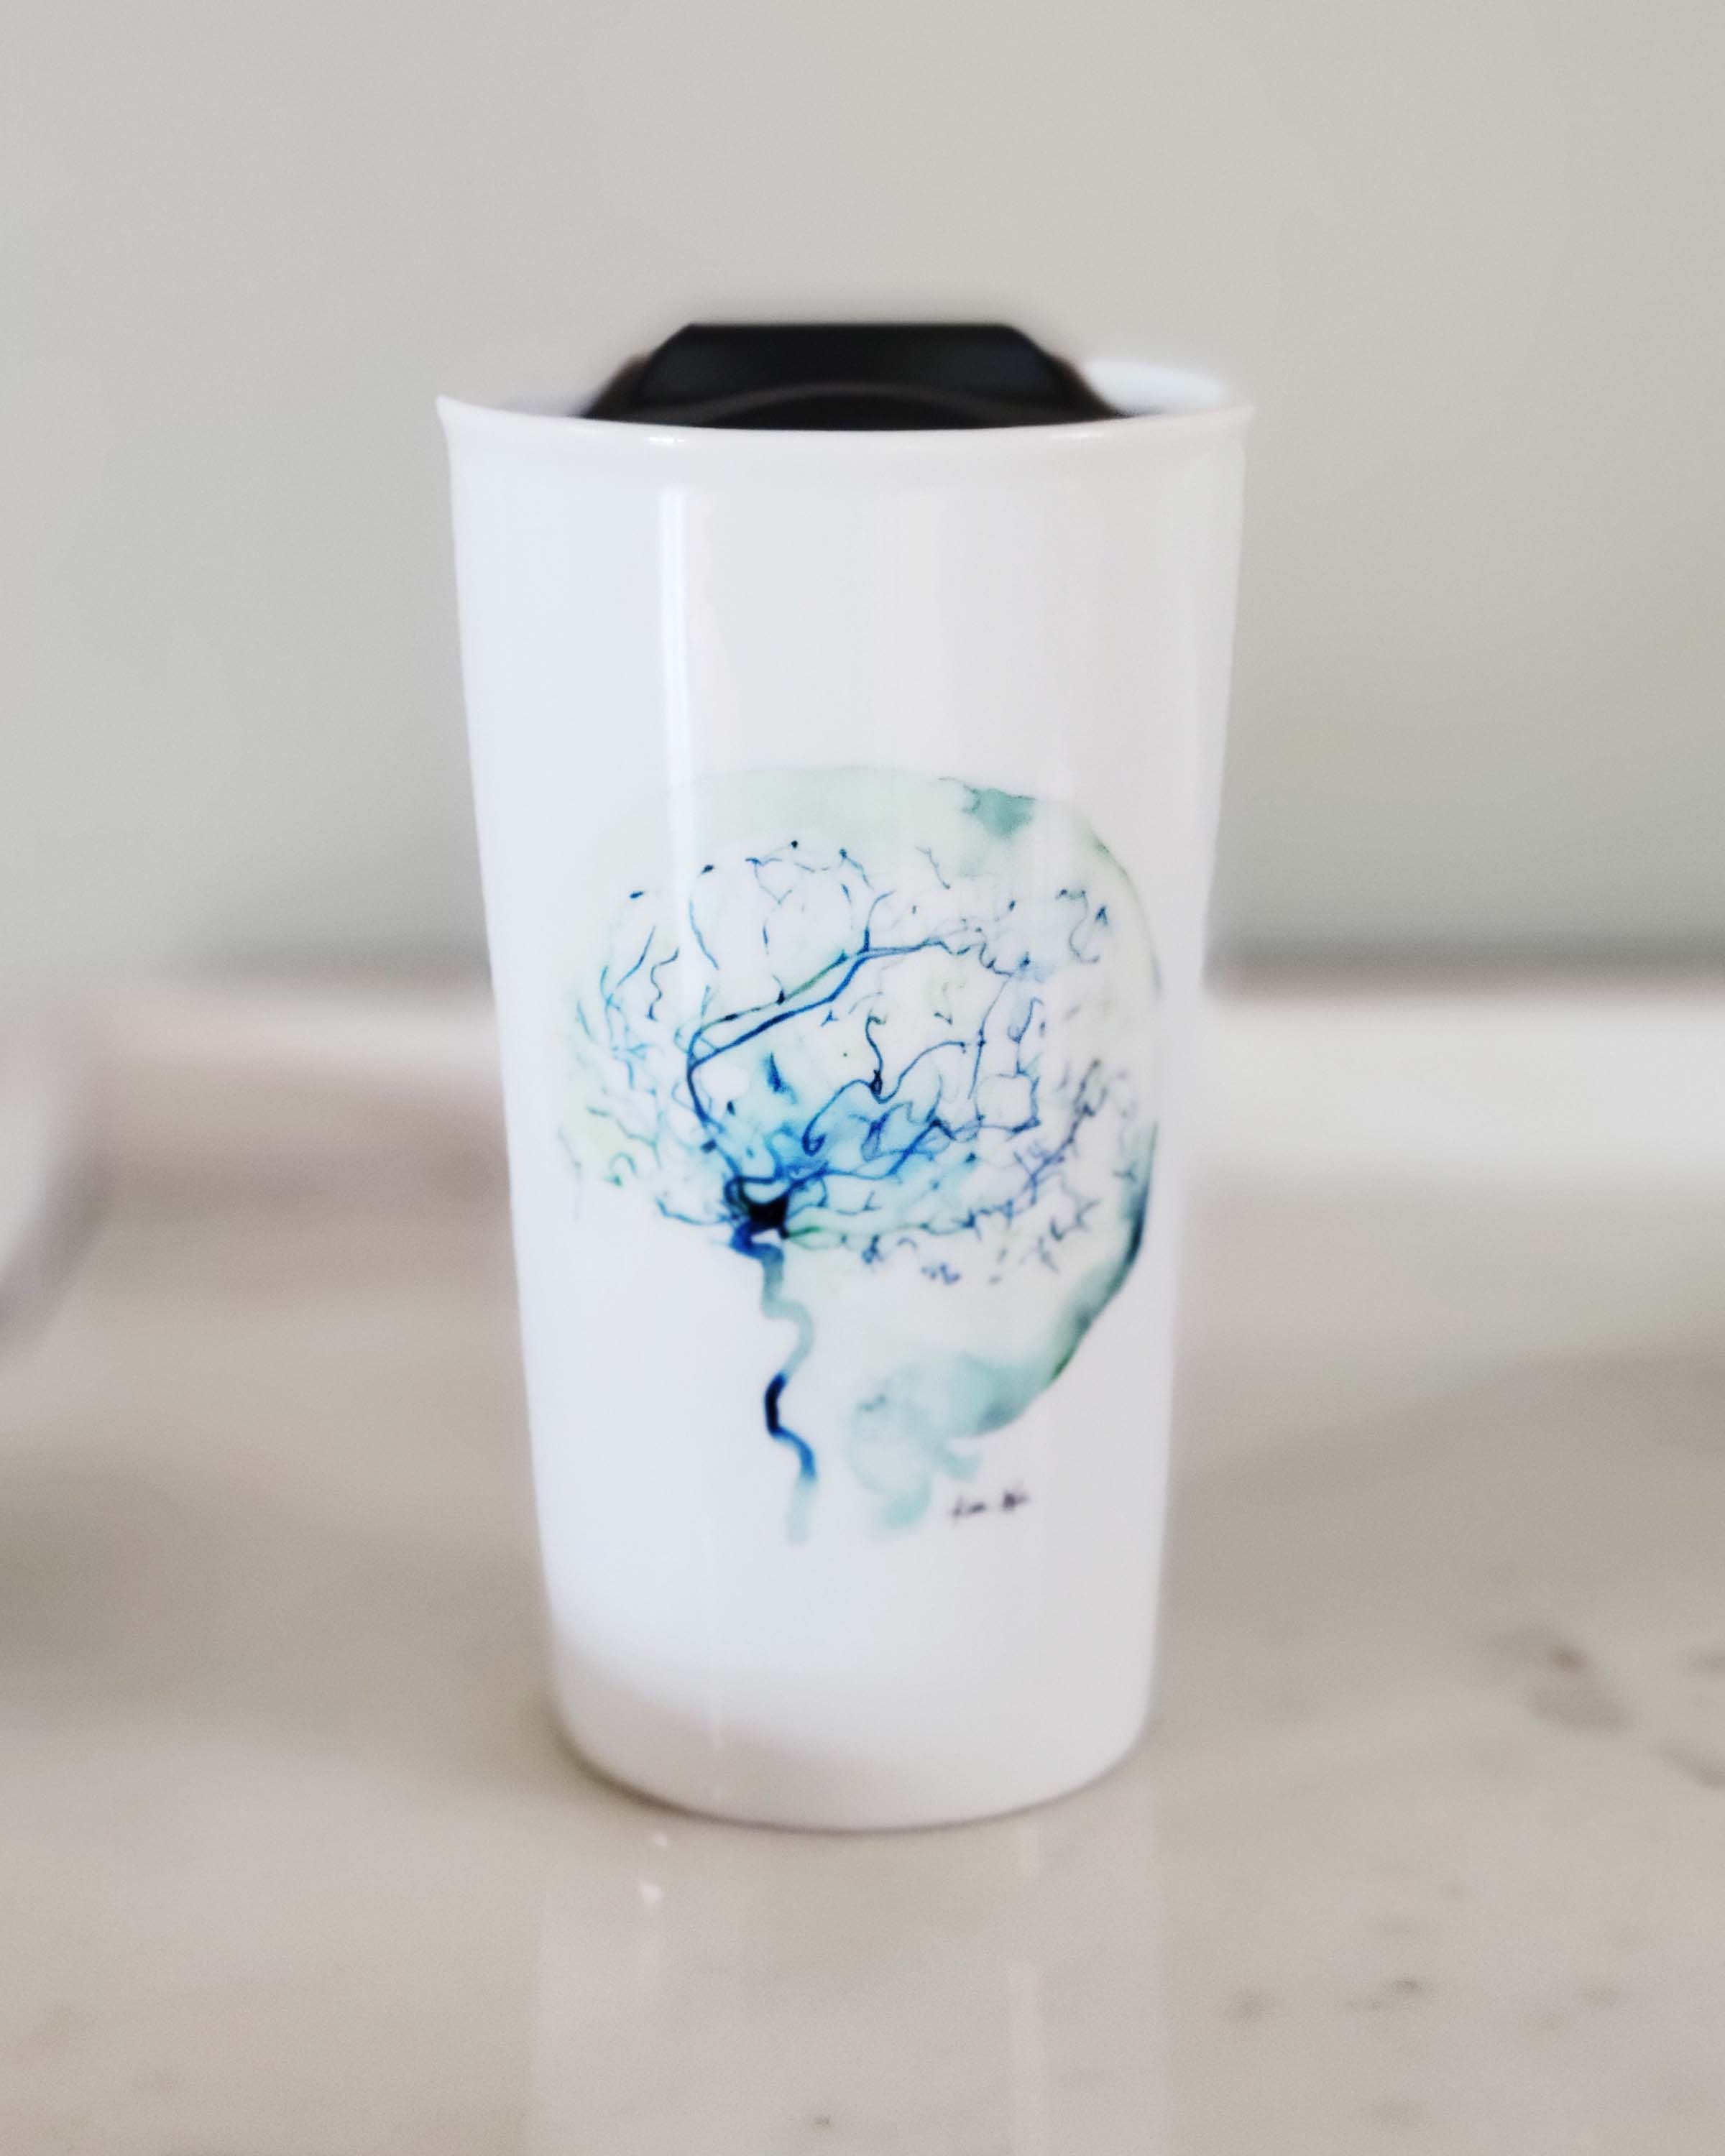 Cerebral Angiography Ceramic Travel Mug